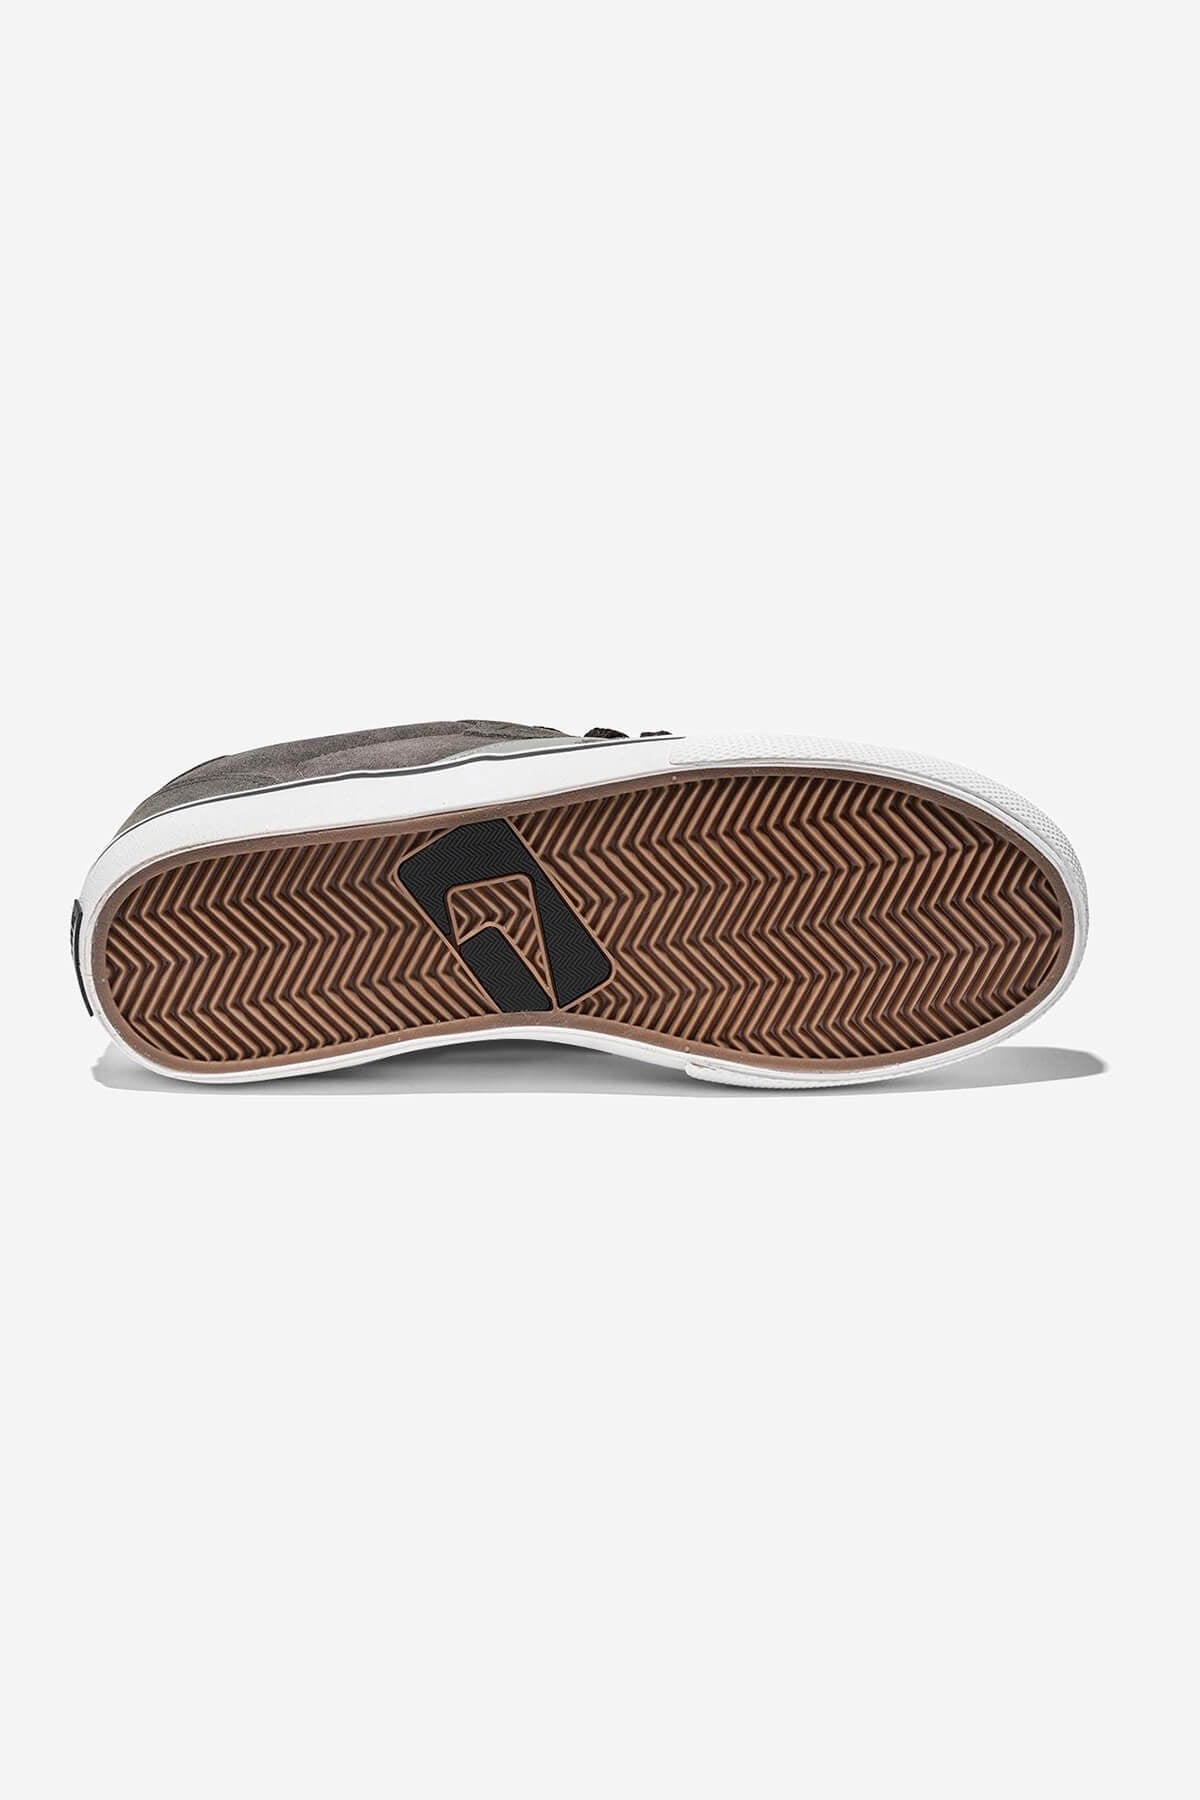 Encore-2 Charcoal/Grijs skateboard schoenen